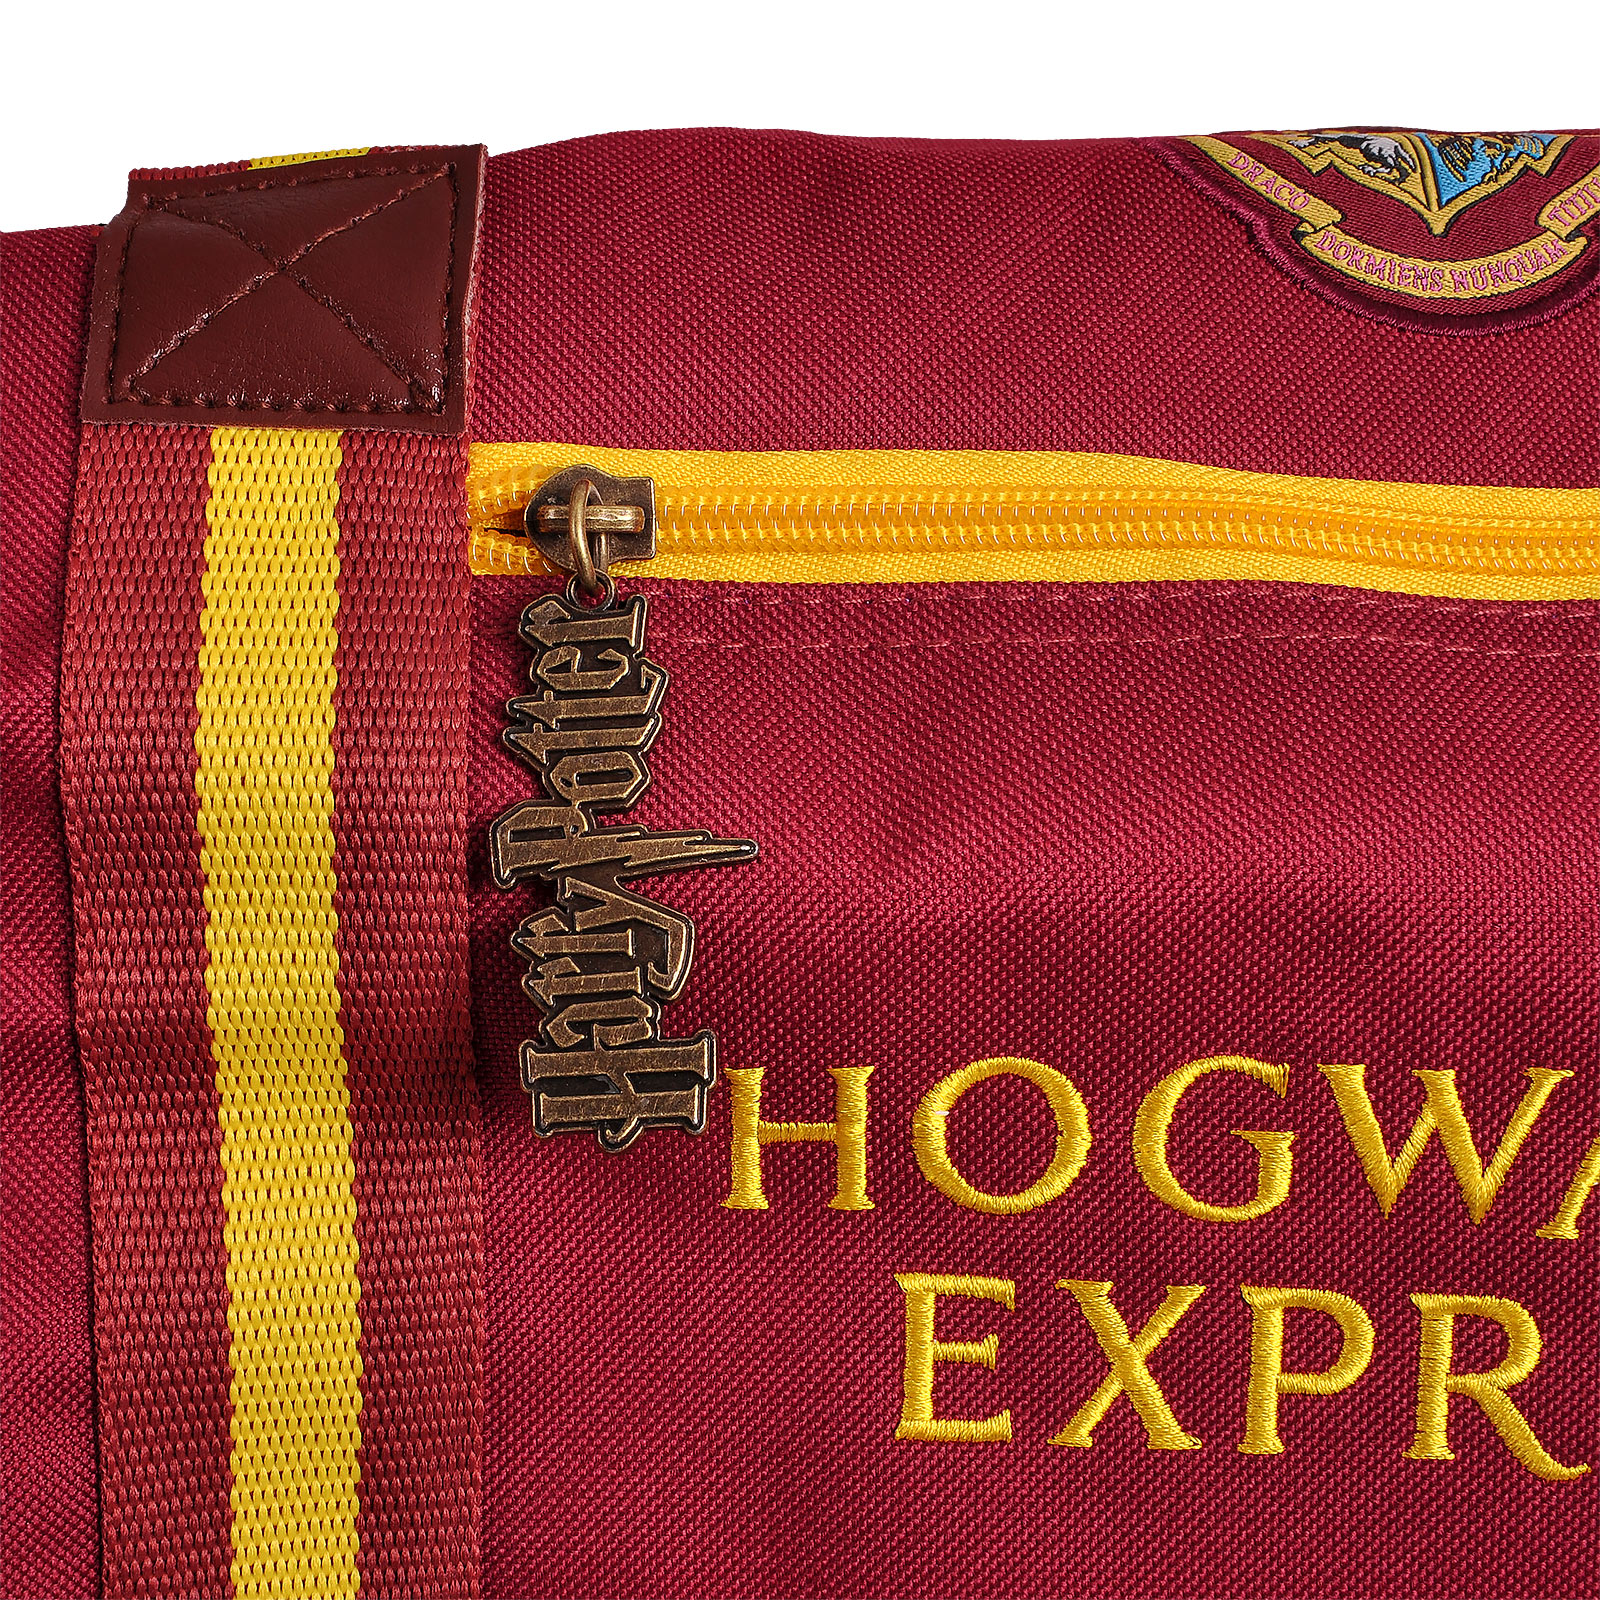 Harry Potter - Sac de voyage Hogwarts Express 9 3/4